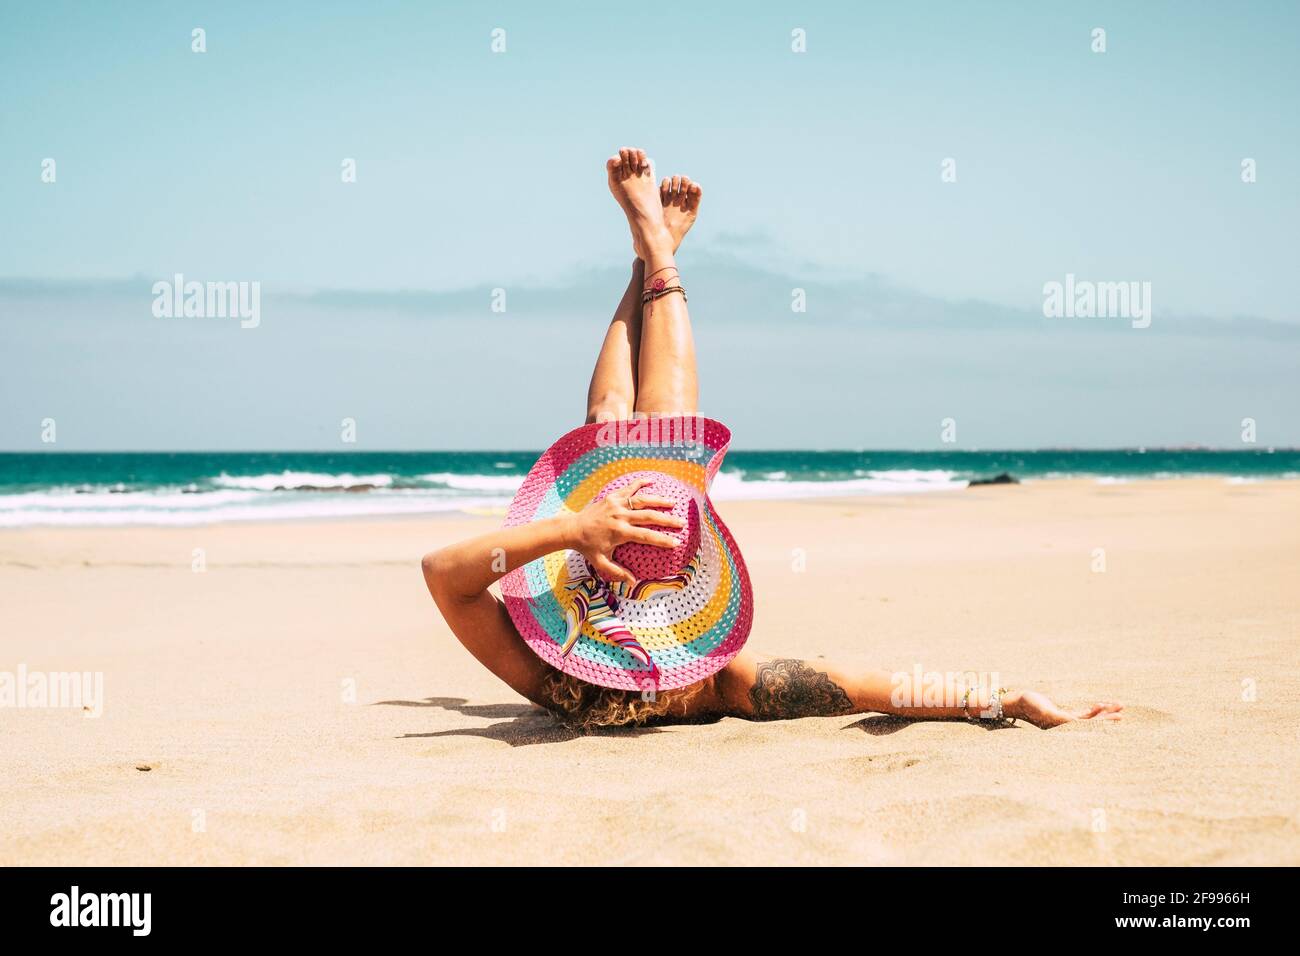 Frau mit bunten Hut genießen den Strand auf dem liegen Sand im Sommerurlaub  Urlaub Reise Lifestyle - junge Frau kaukasische Menschen nehmen ein  Sonnenbad allein mit blauem Ozean in Hintergrund Stockfotografie - Alamy